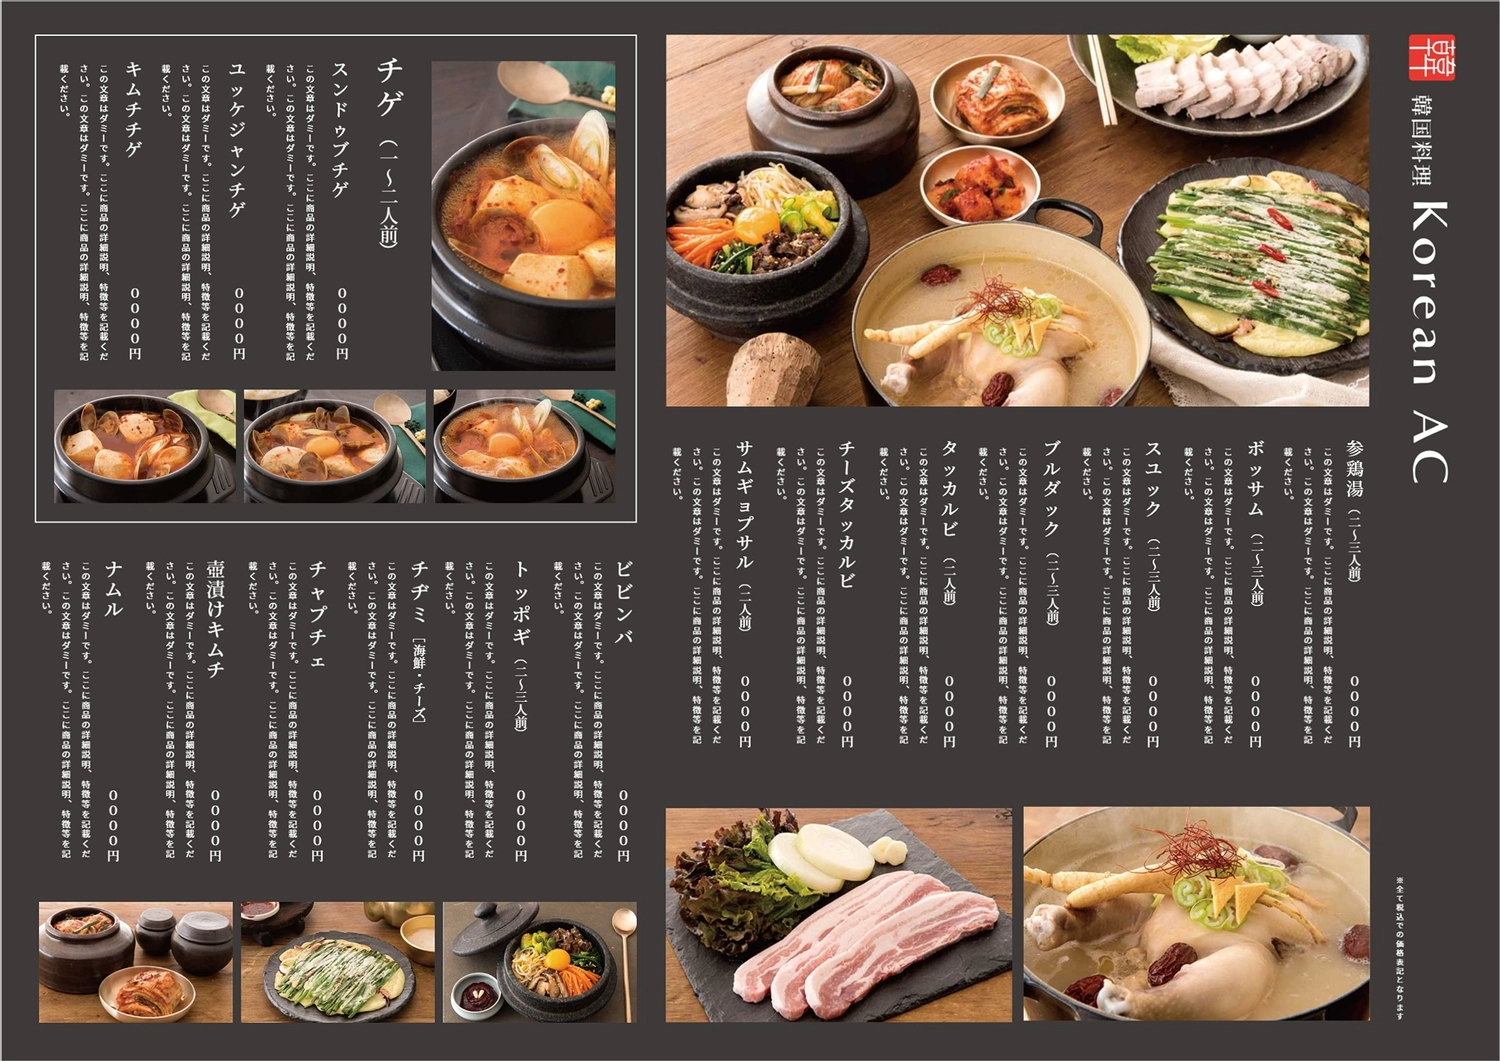 韓国料理メニュー, シンプル, チゲ, スンドゥブチゲ, メニューテンプレート